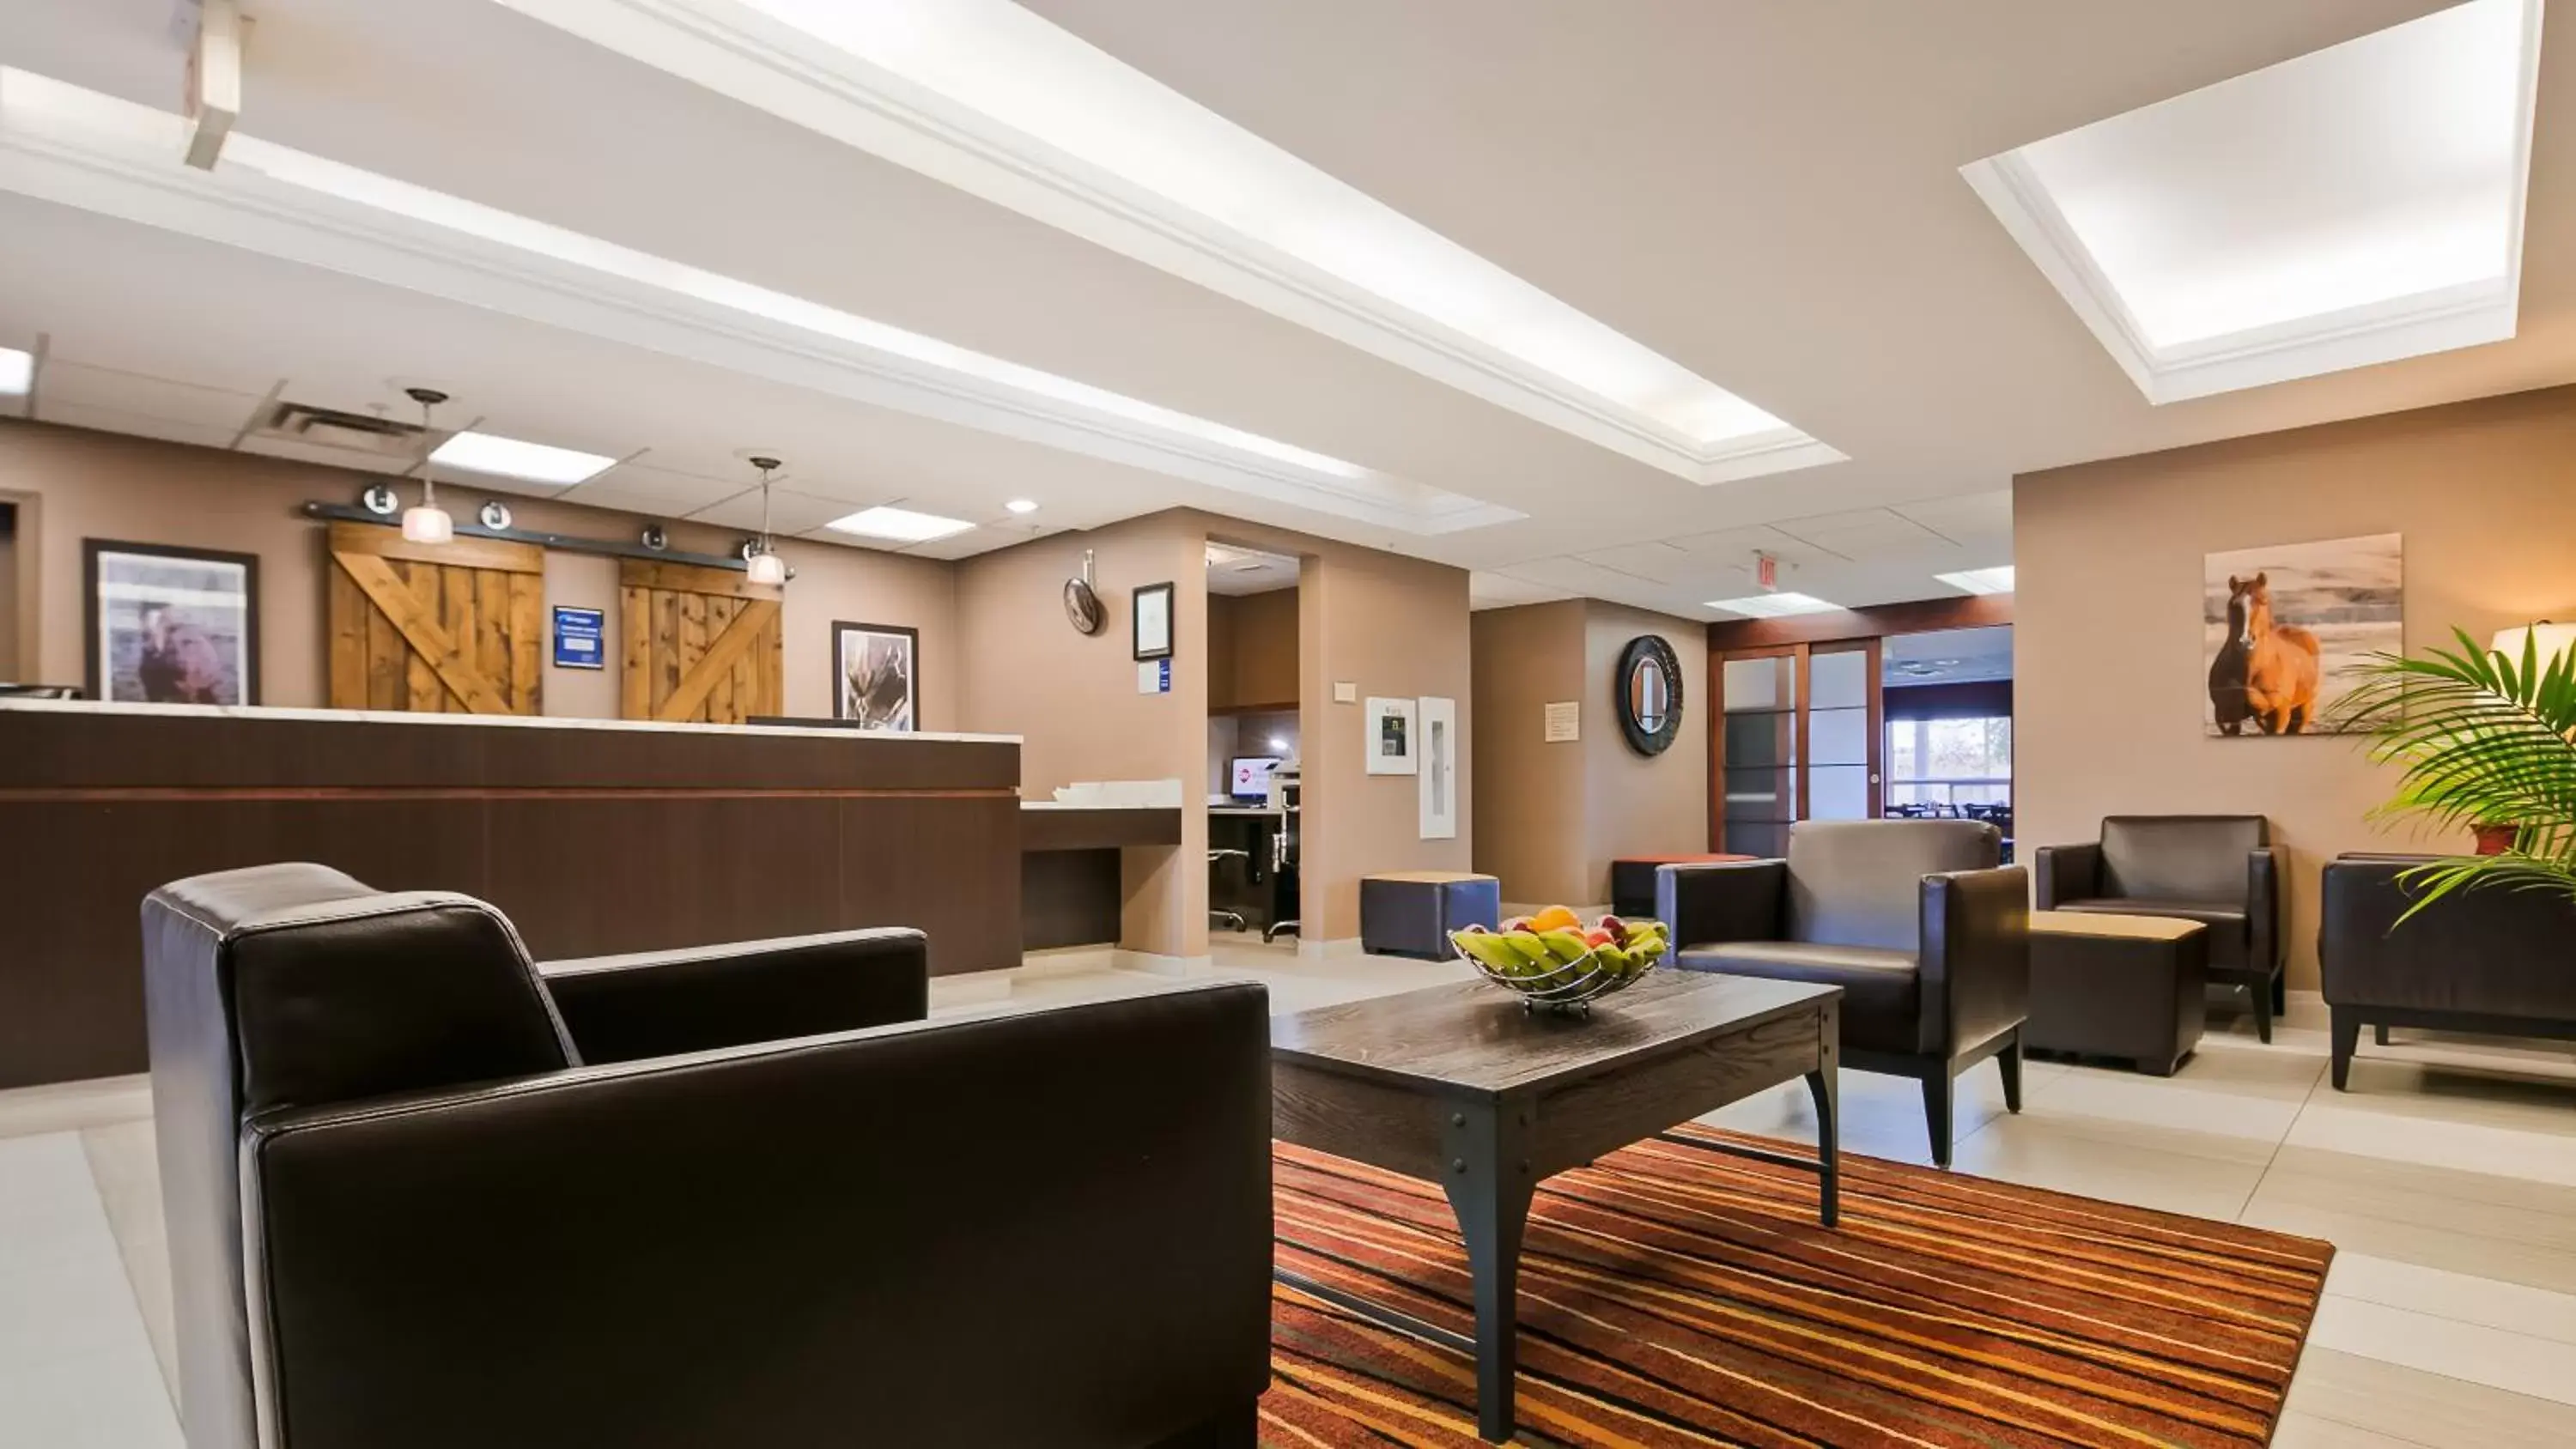 Lobby or reception, Lobby/Reception in Best Western Plus Red Deer Inn & Suite